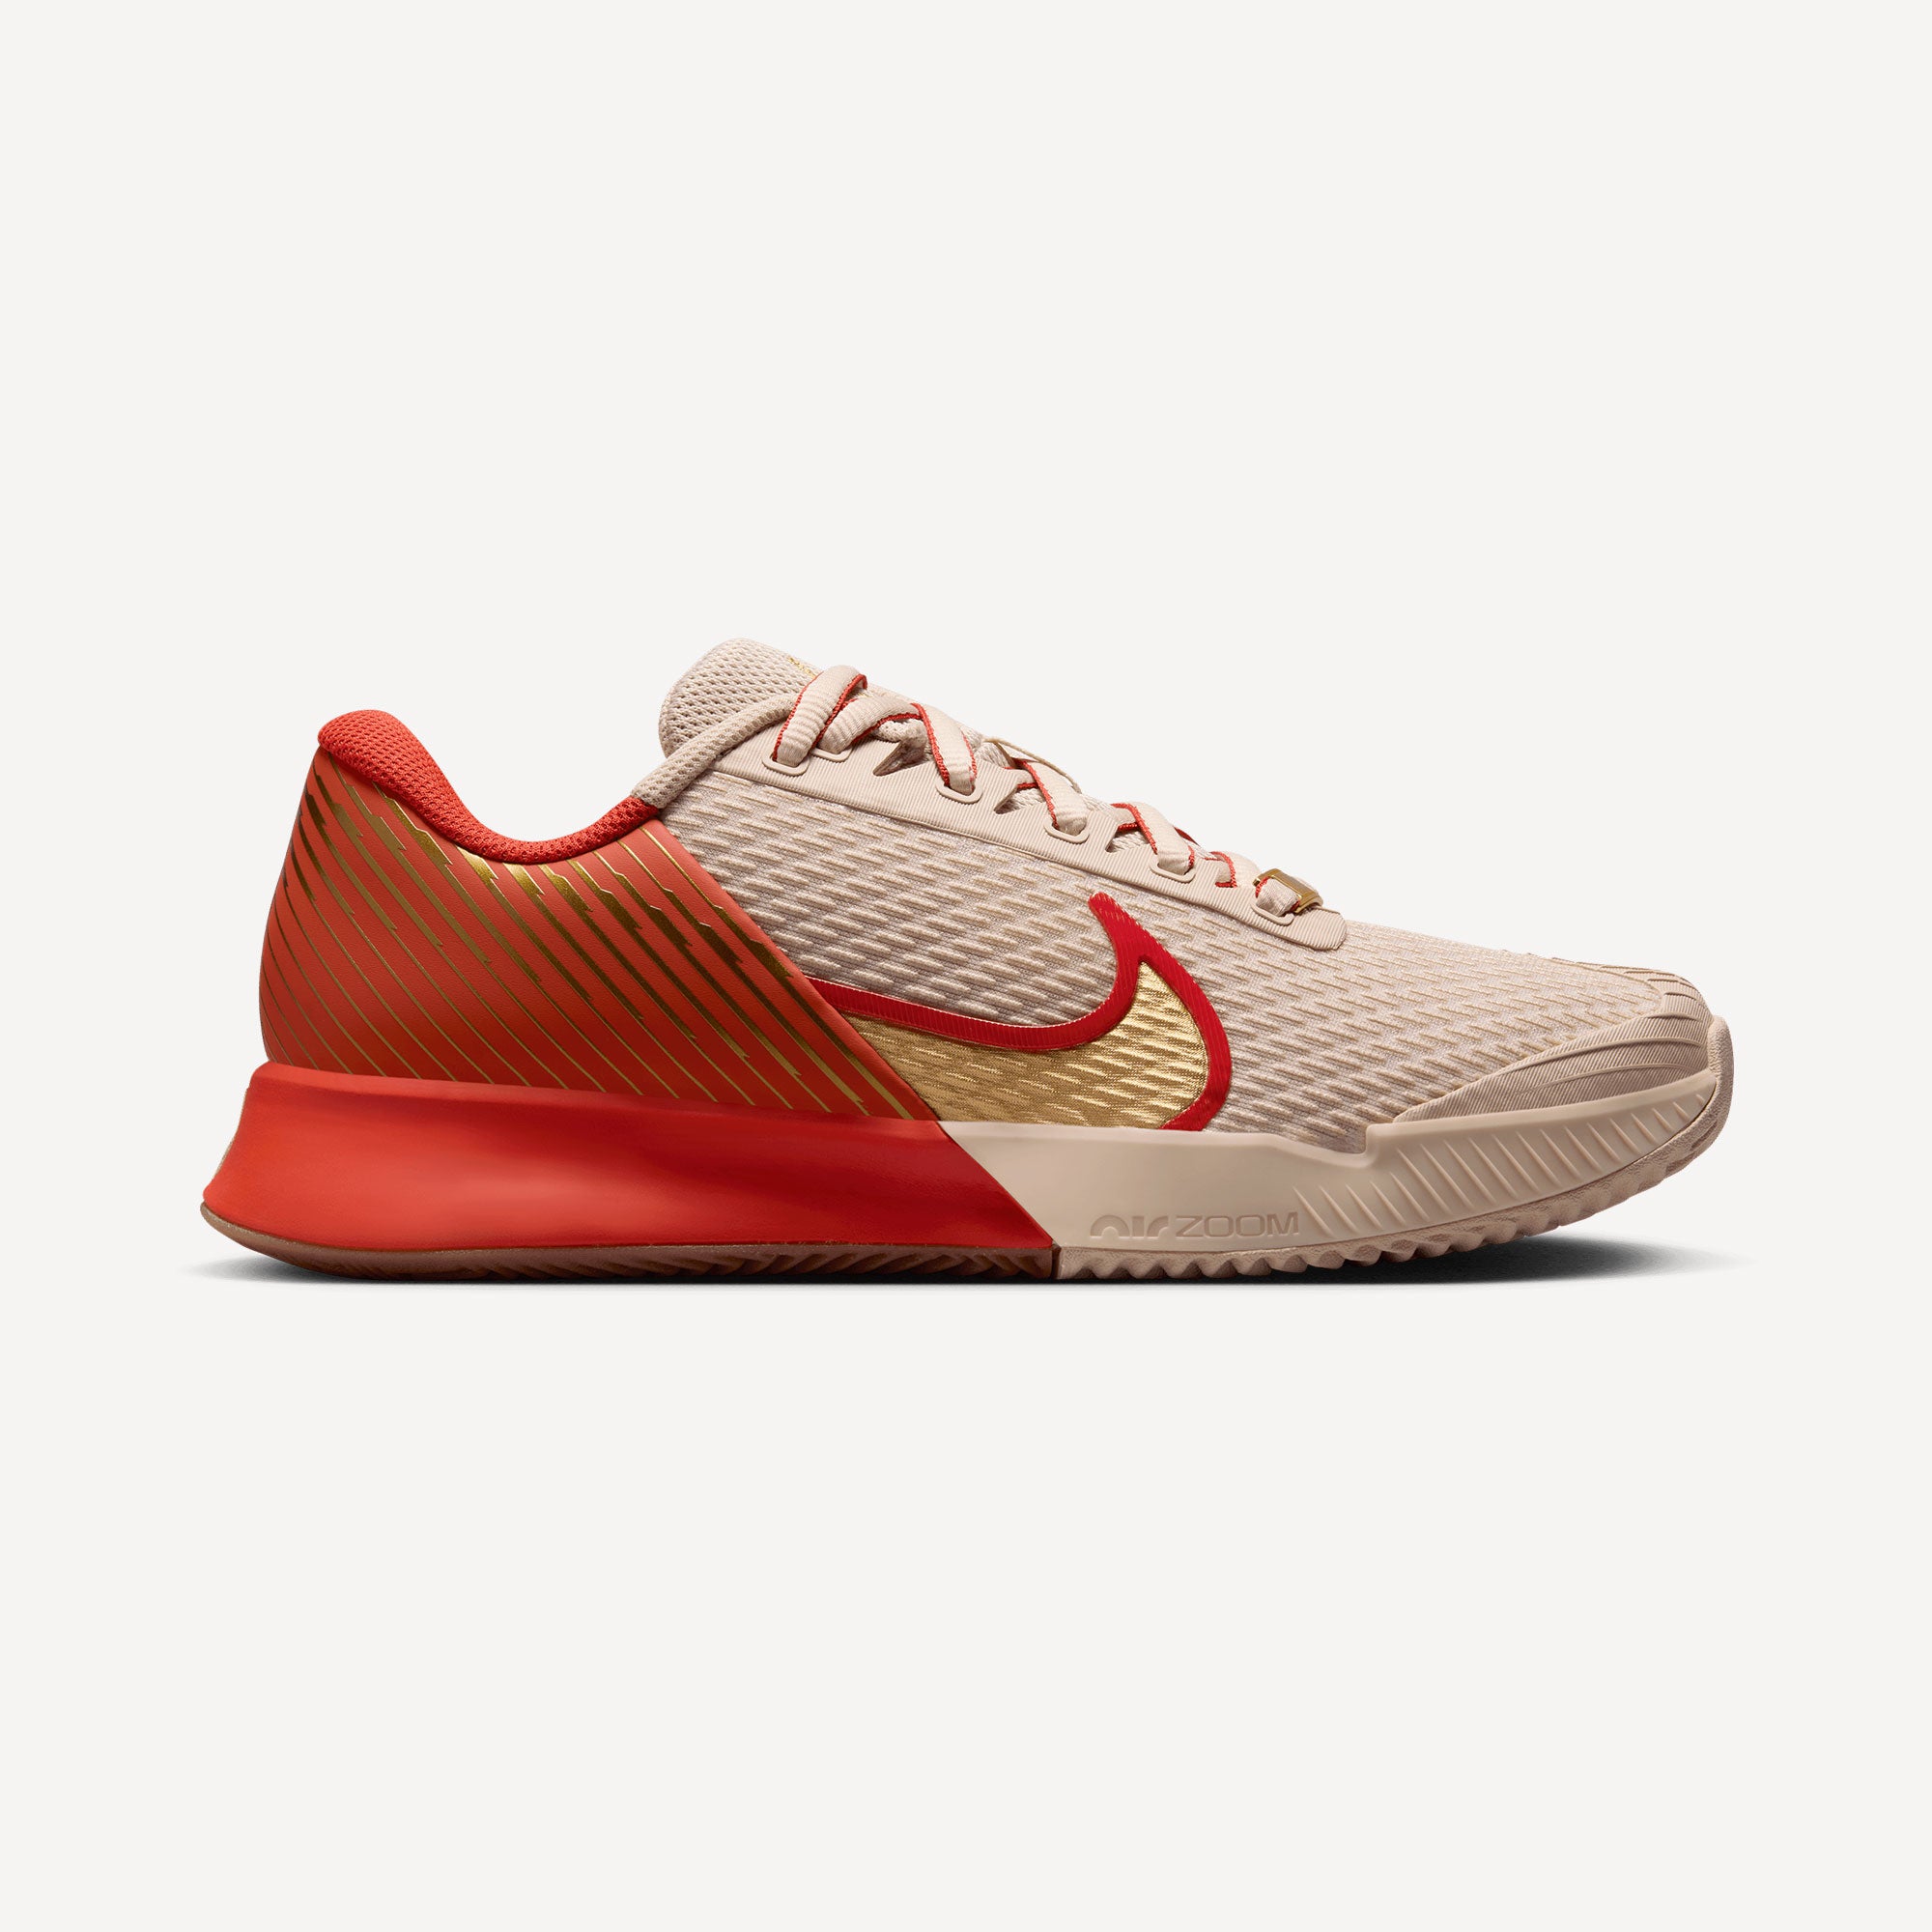 NikeCourt Air Zoom Vapor Pro 2 Premium Women's Clay Court Tennis Shoes - Sand (1)